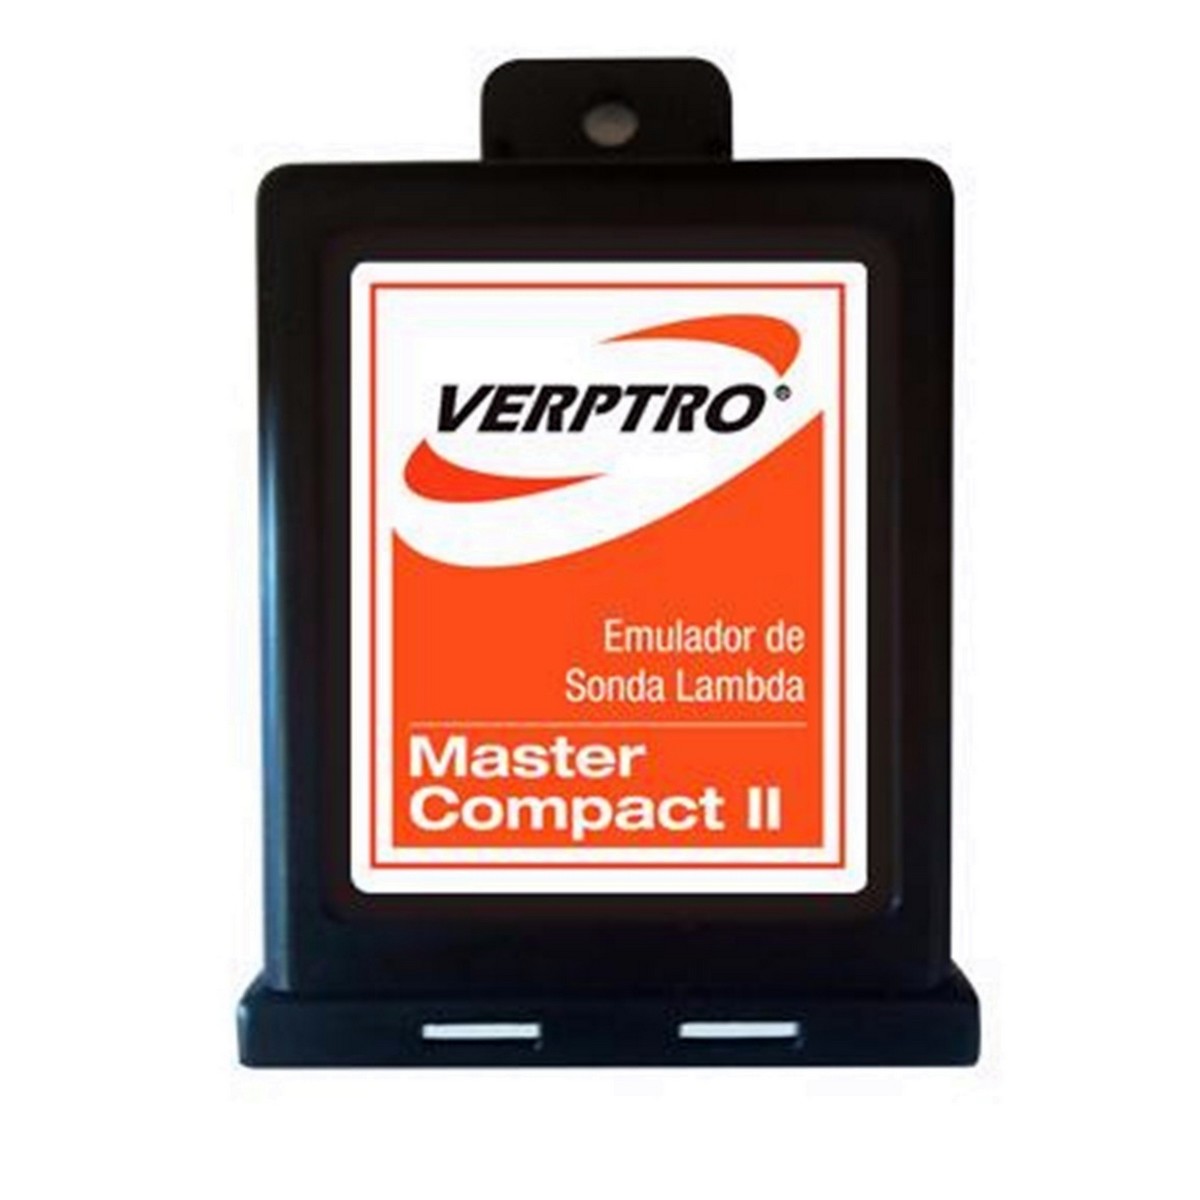 Sonda Master Compact II Verptro